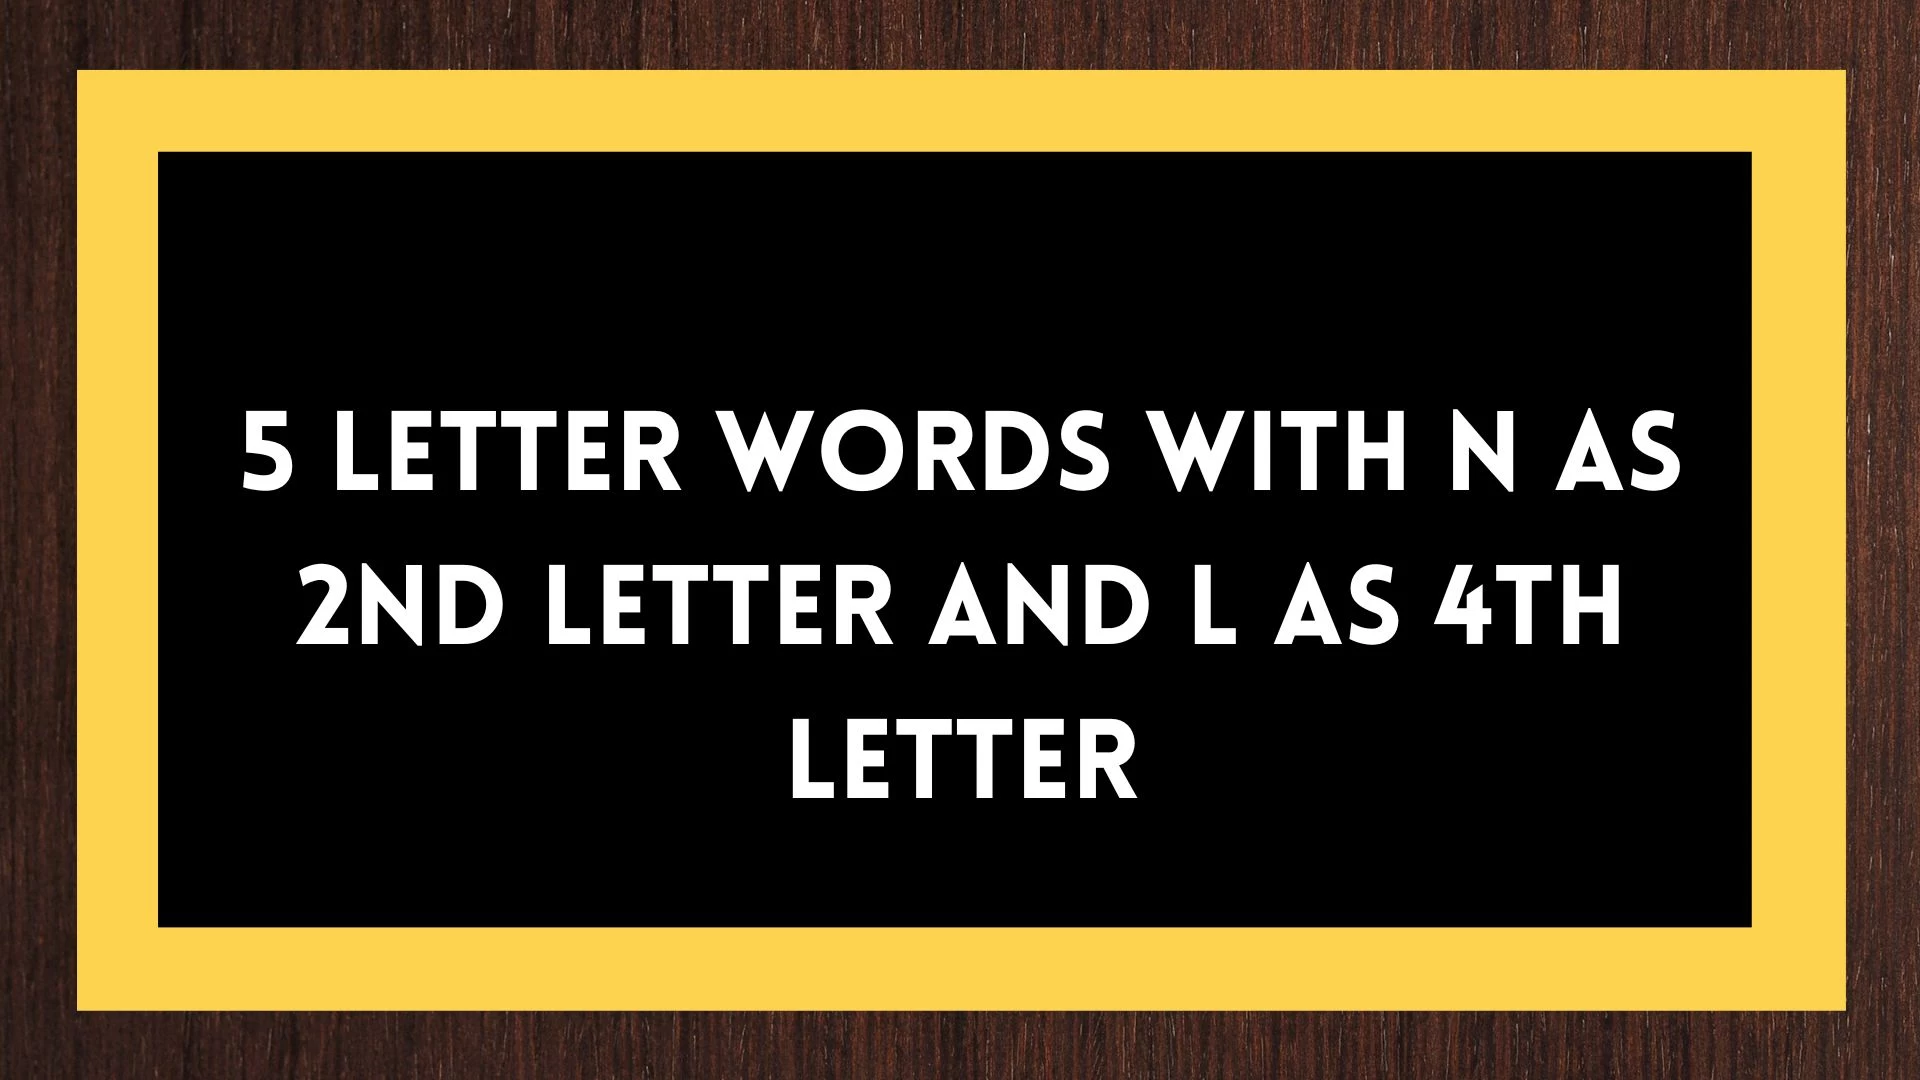 Palabras de 5 letras, con la 2da letra N y la 4ta letra L, una lista de palabras de cinco letras, con la 2da letra N y la 4ta letra L.